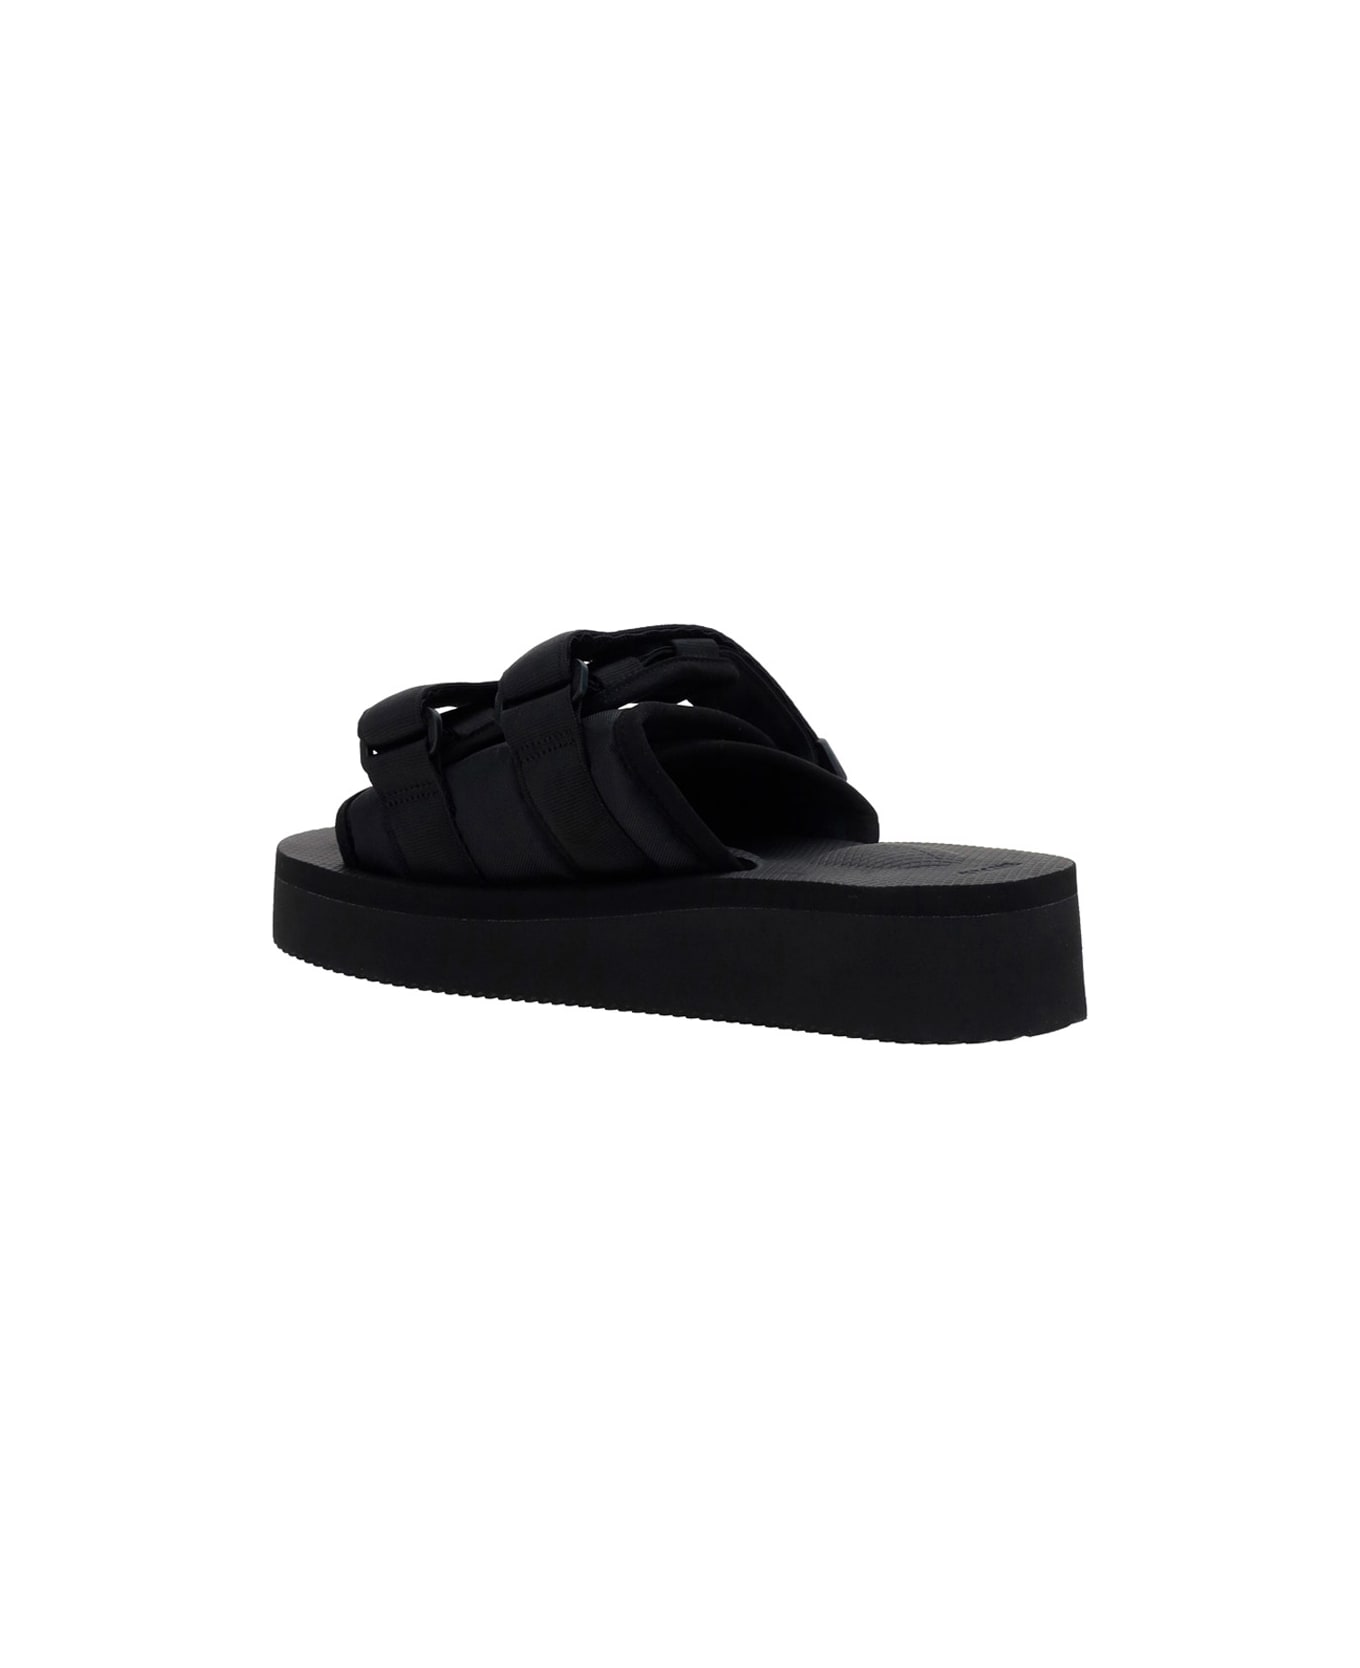 SUICOKE Moto-po Sandals - Black フラットシューズ